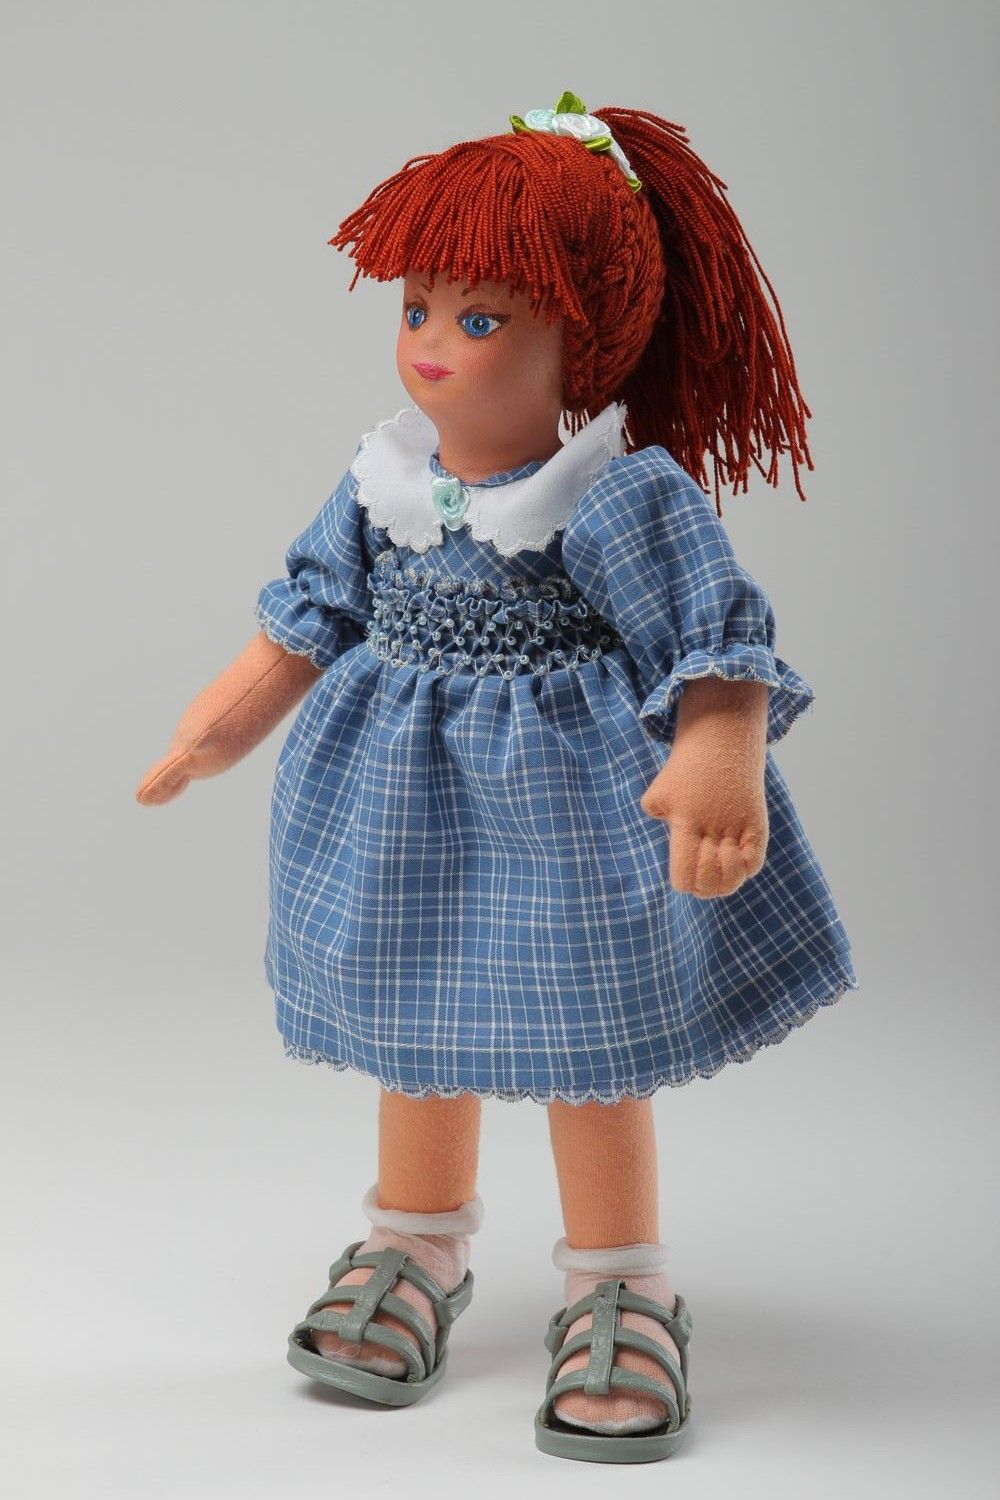 Кукла ручной работы кукла из ткани мягкая кукла расписанная акриловыми красками фото 4